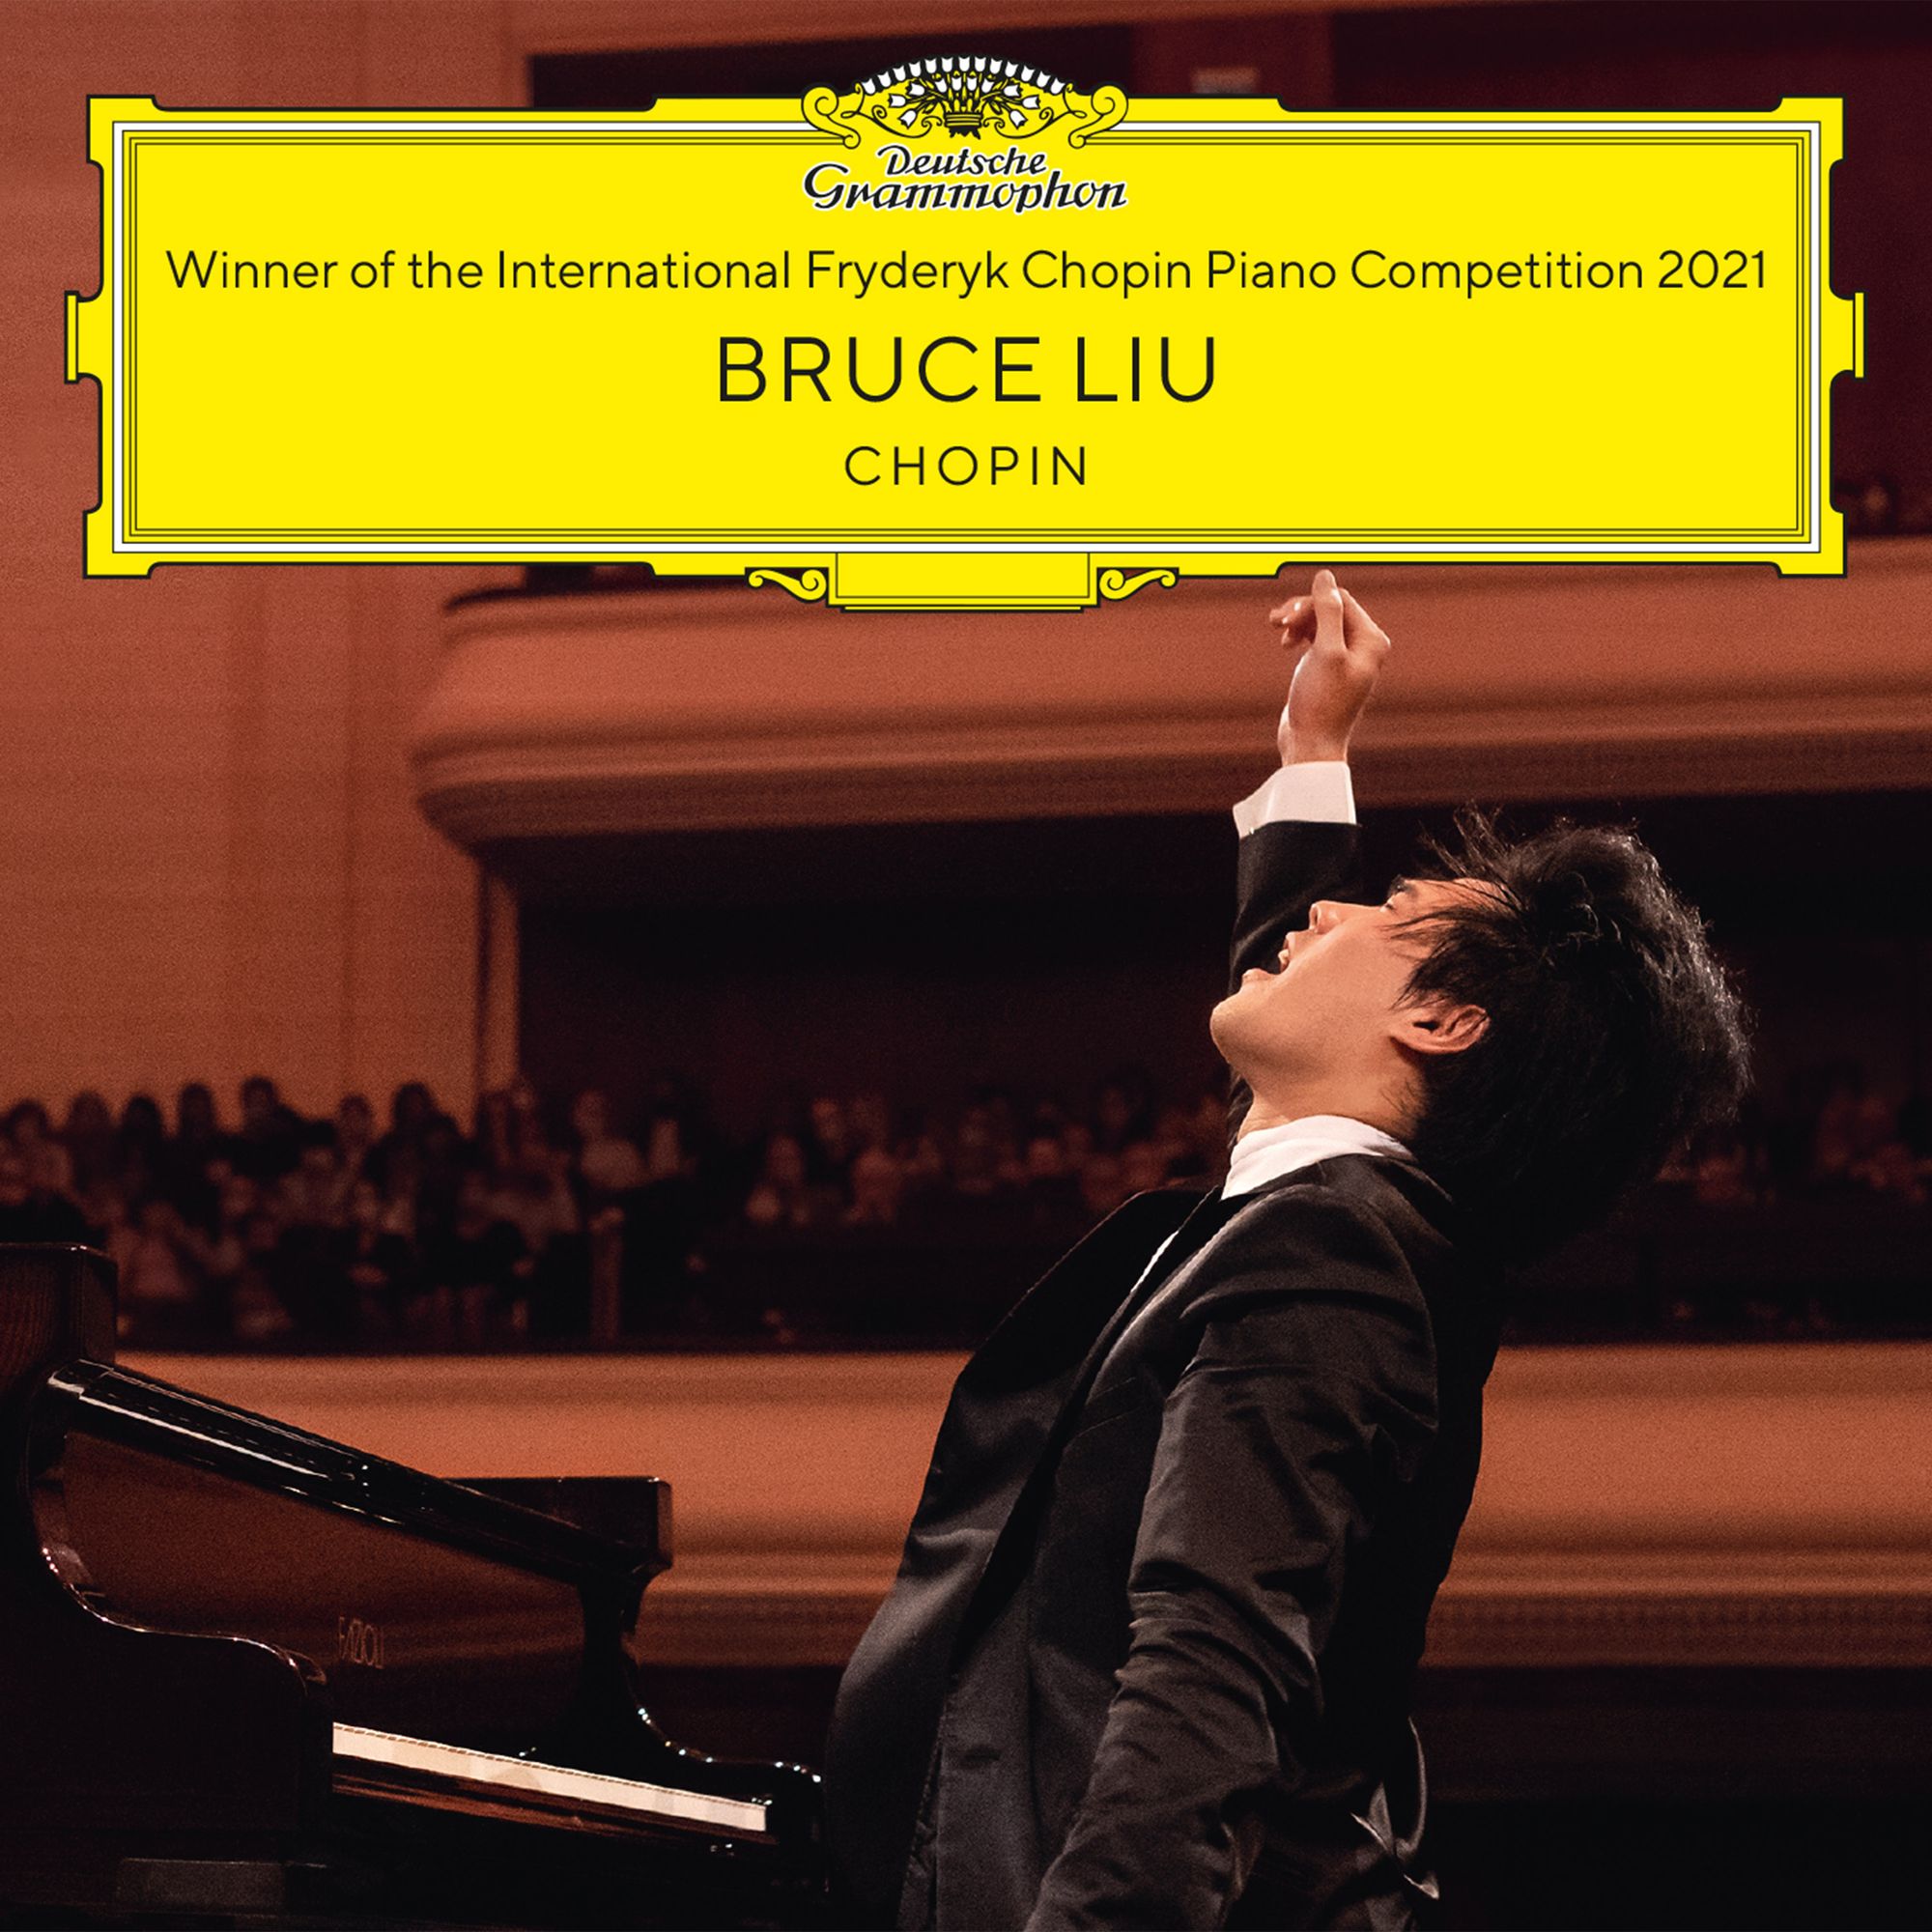 Chopin Competition winner Bruce Liu's debut disc